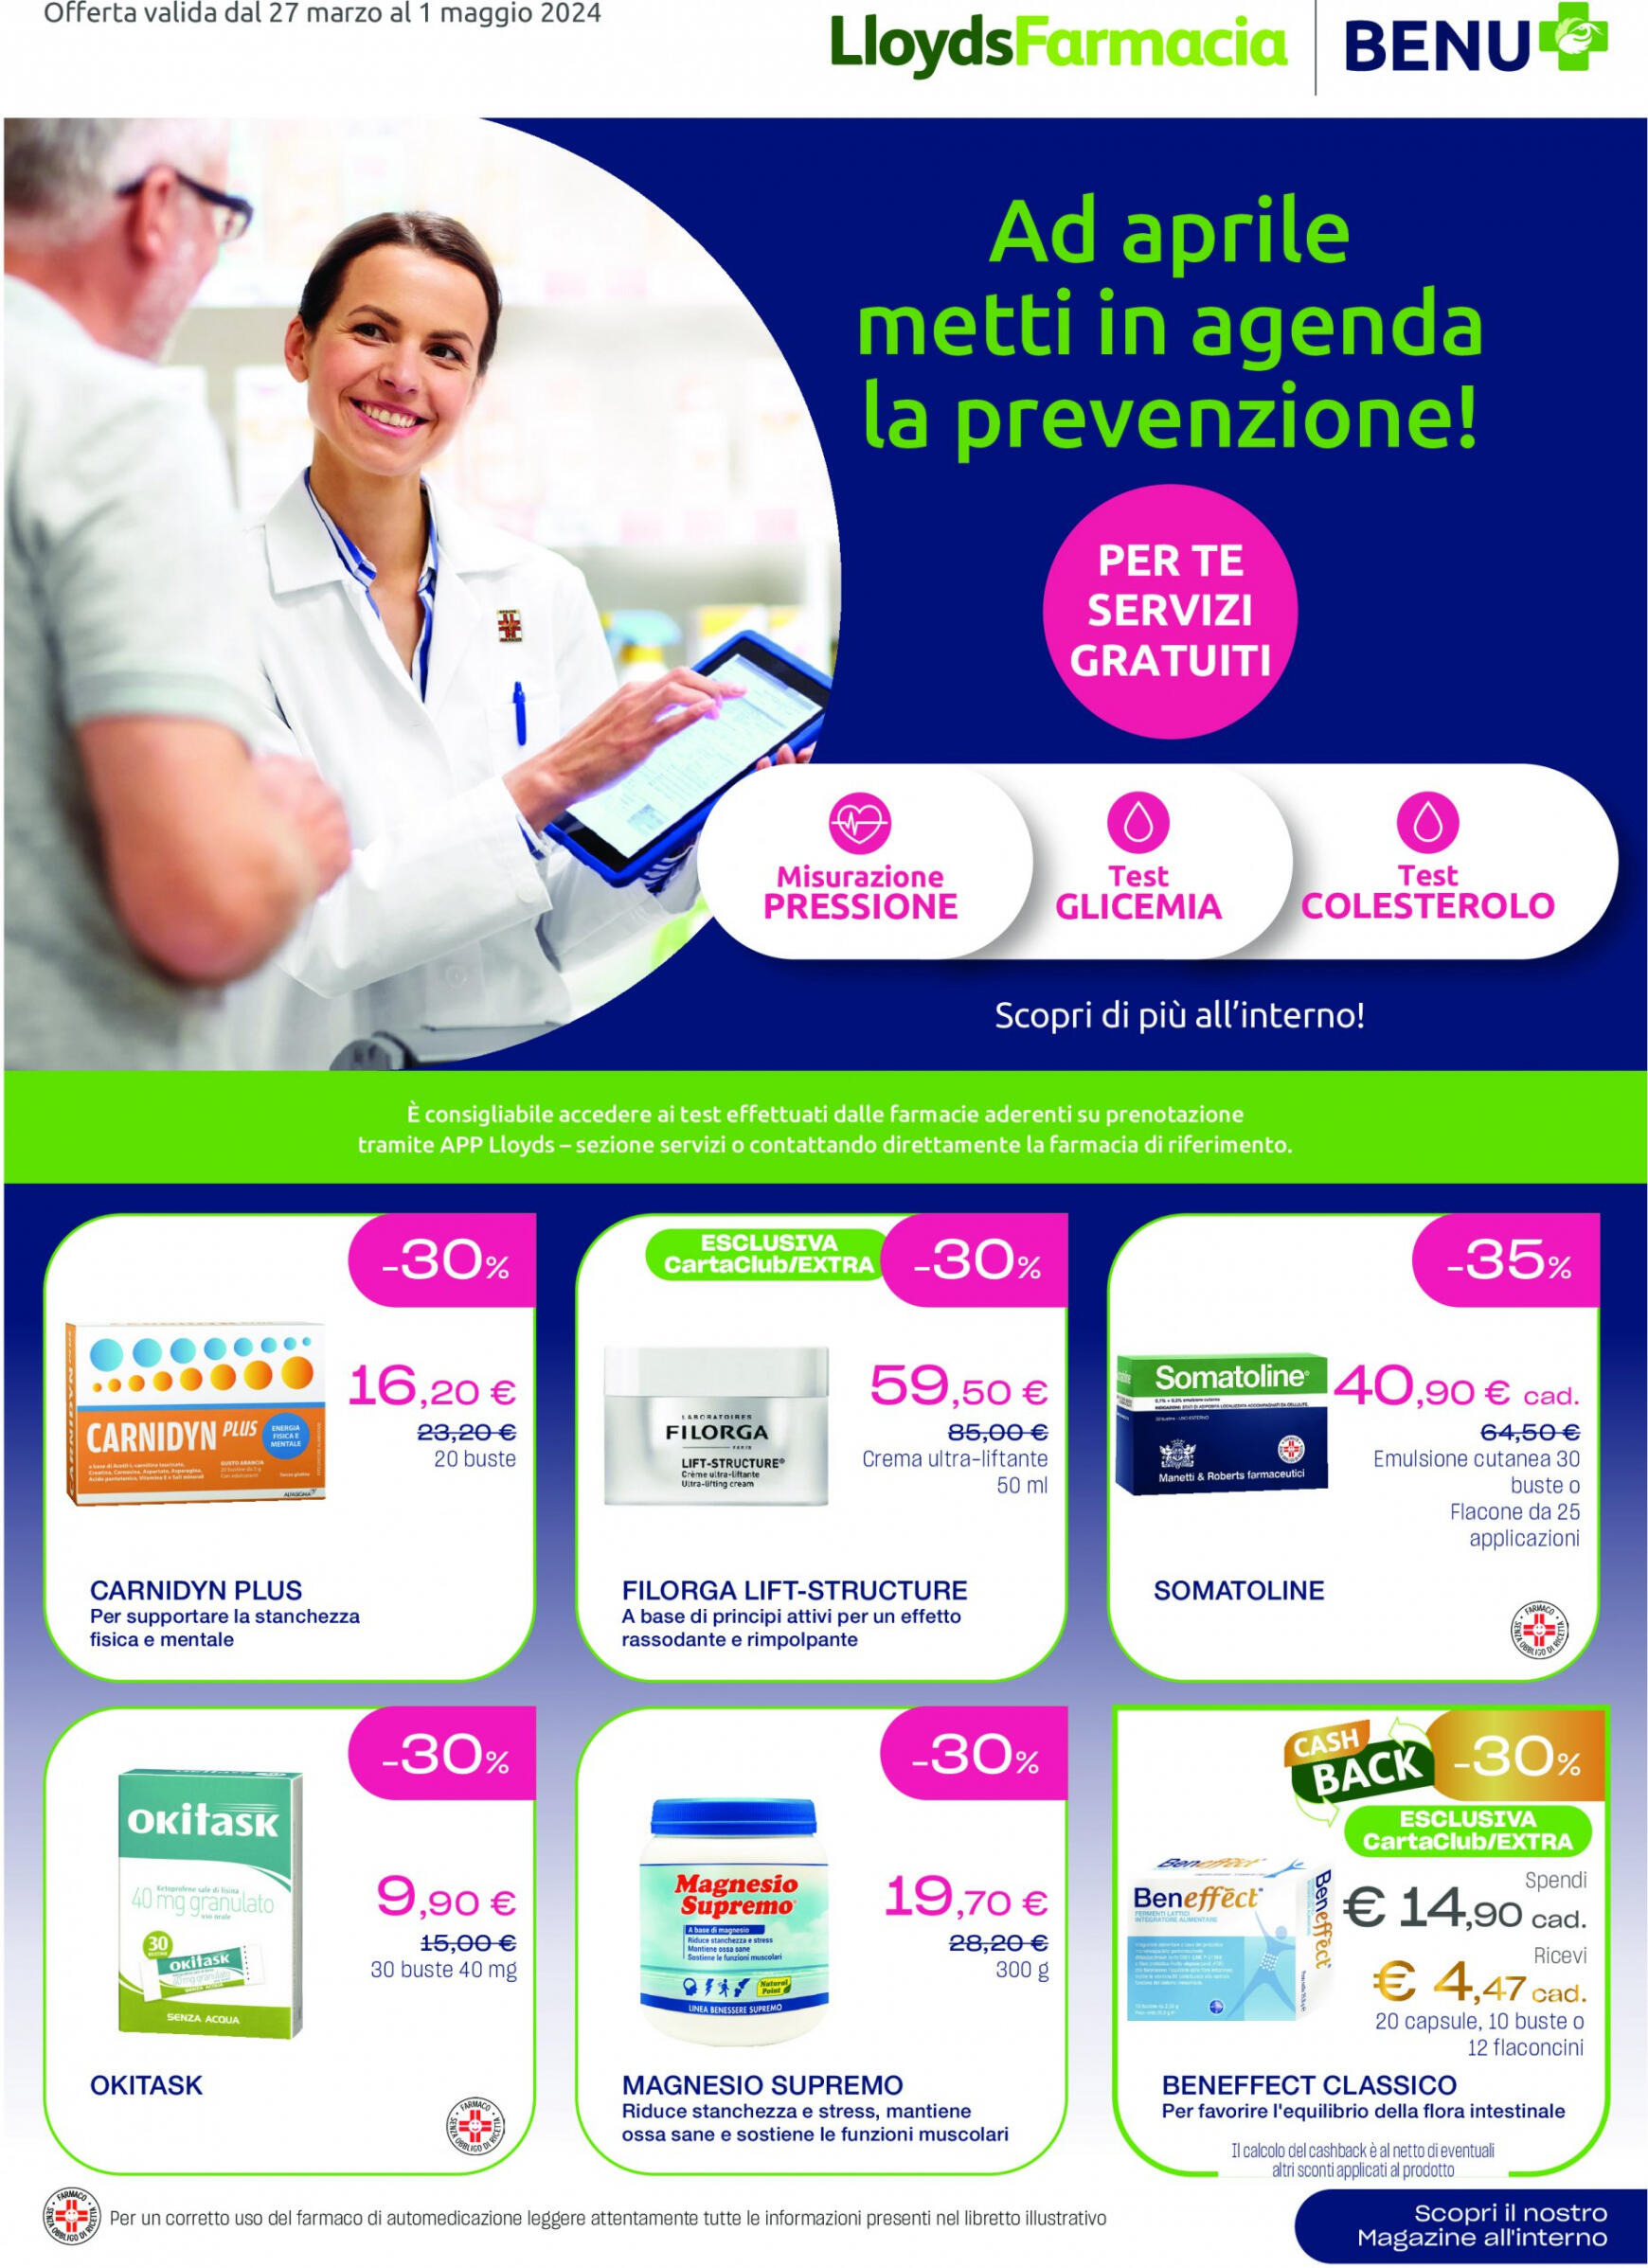 lloyds-farmacia - Nuovo volantino Lloyds Farmacia - Ad aprile metti in agenda la prevenzione! 27.03. - 01.05.